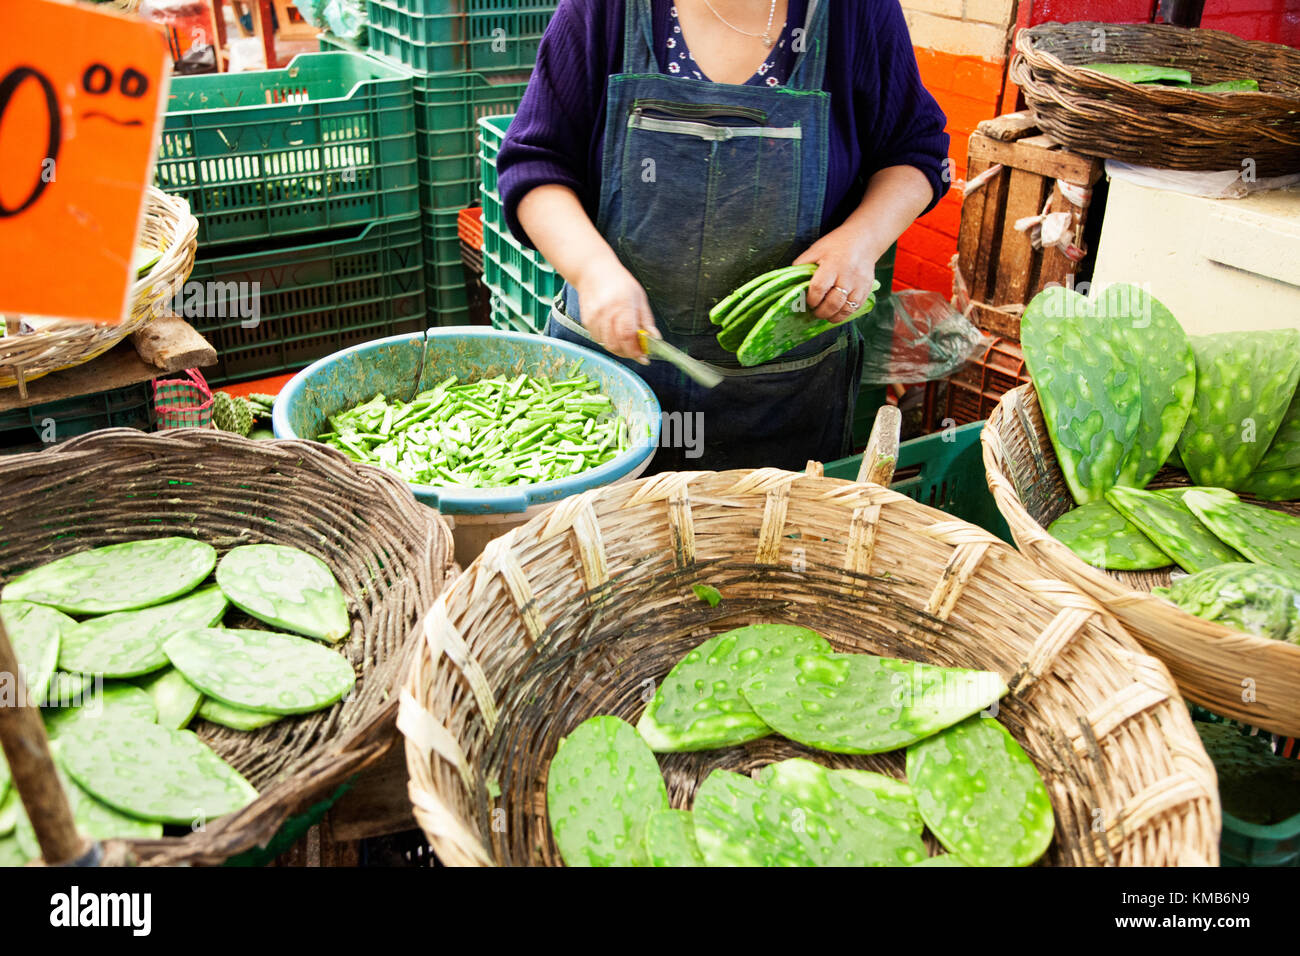 Nopales, Opuntia cacti, being prepared for sale in Mexico City's Mercado de la Merced. Stock Photo